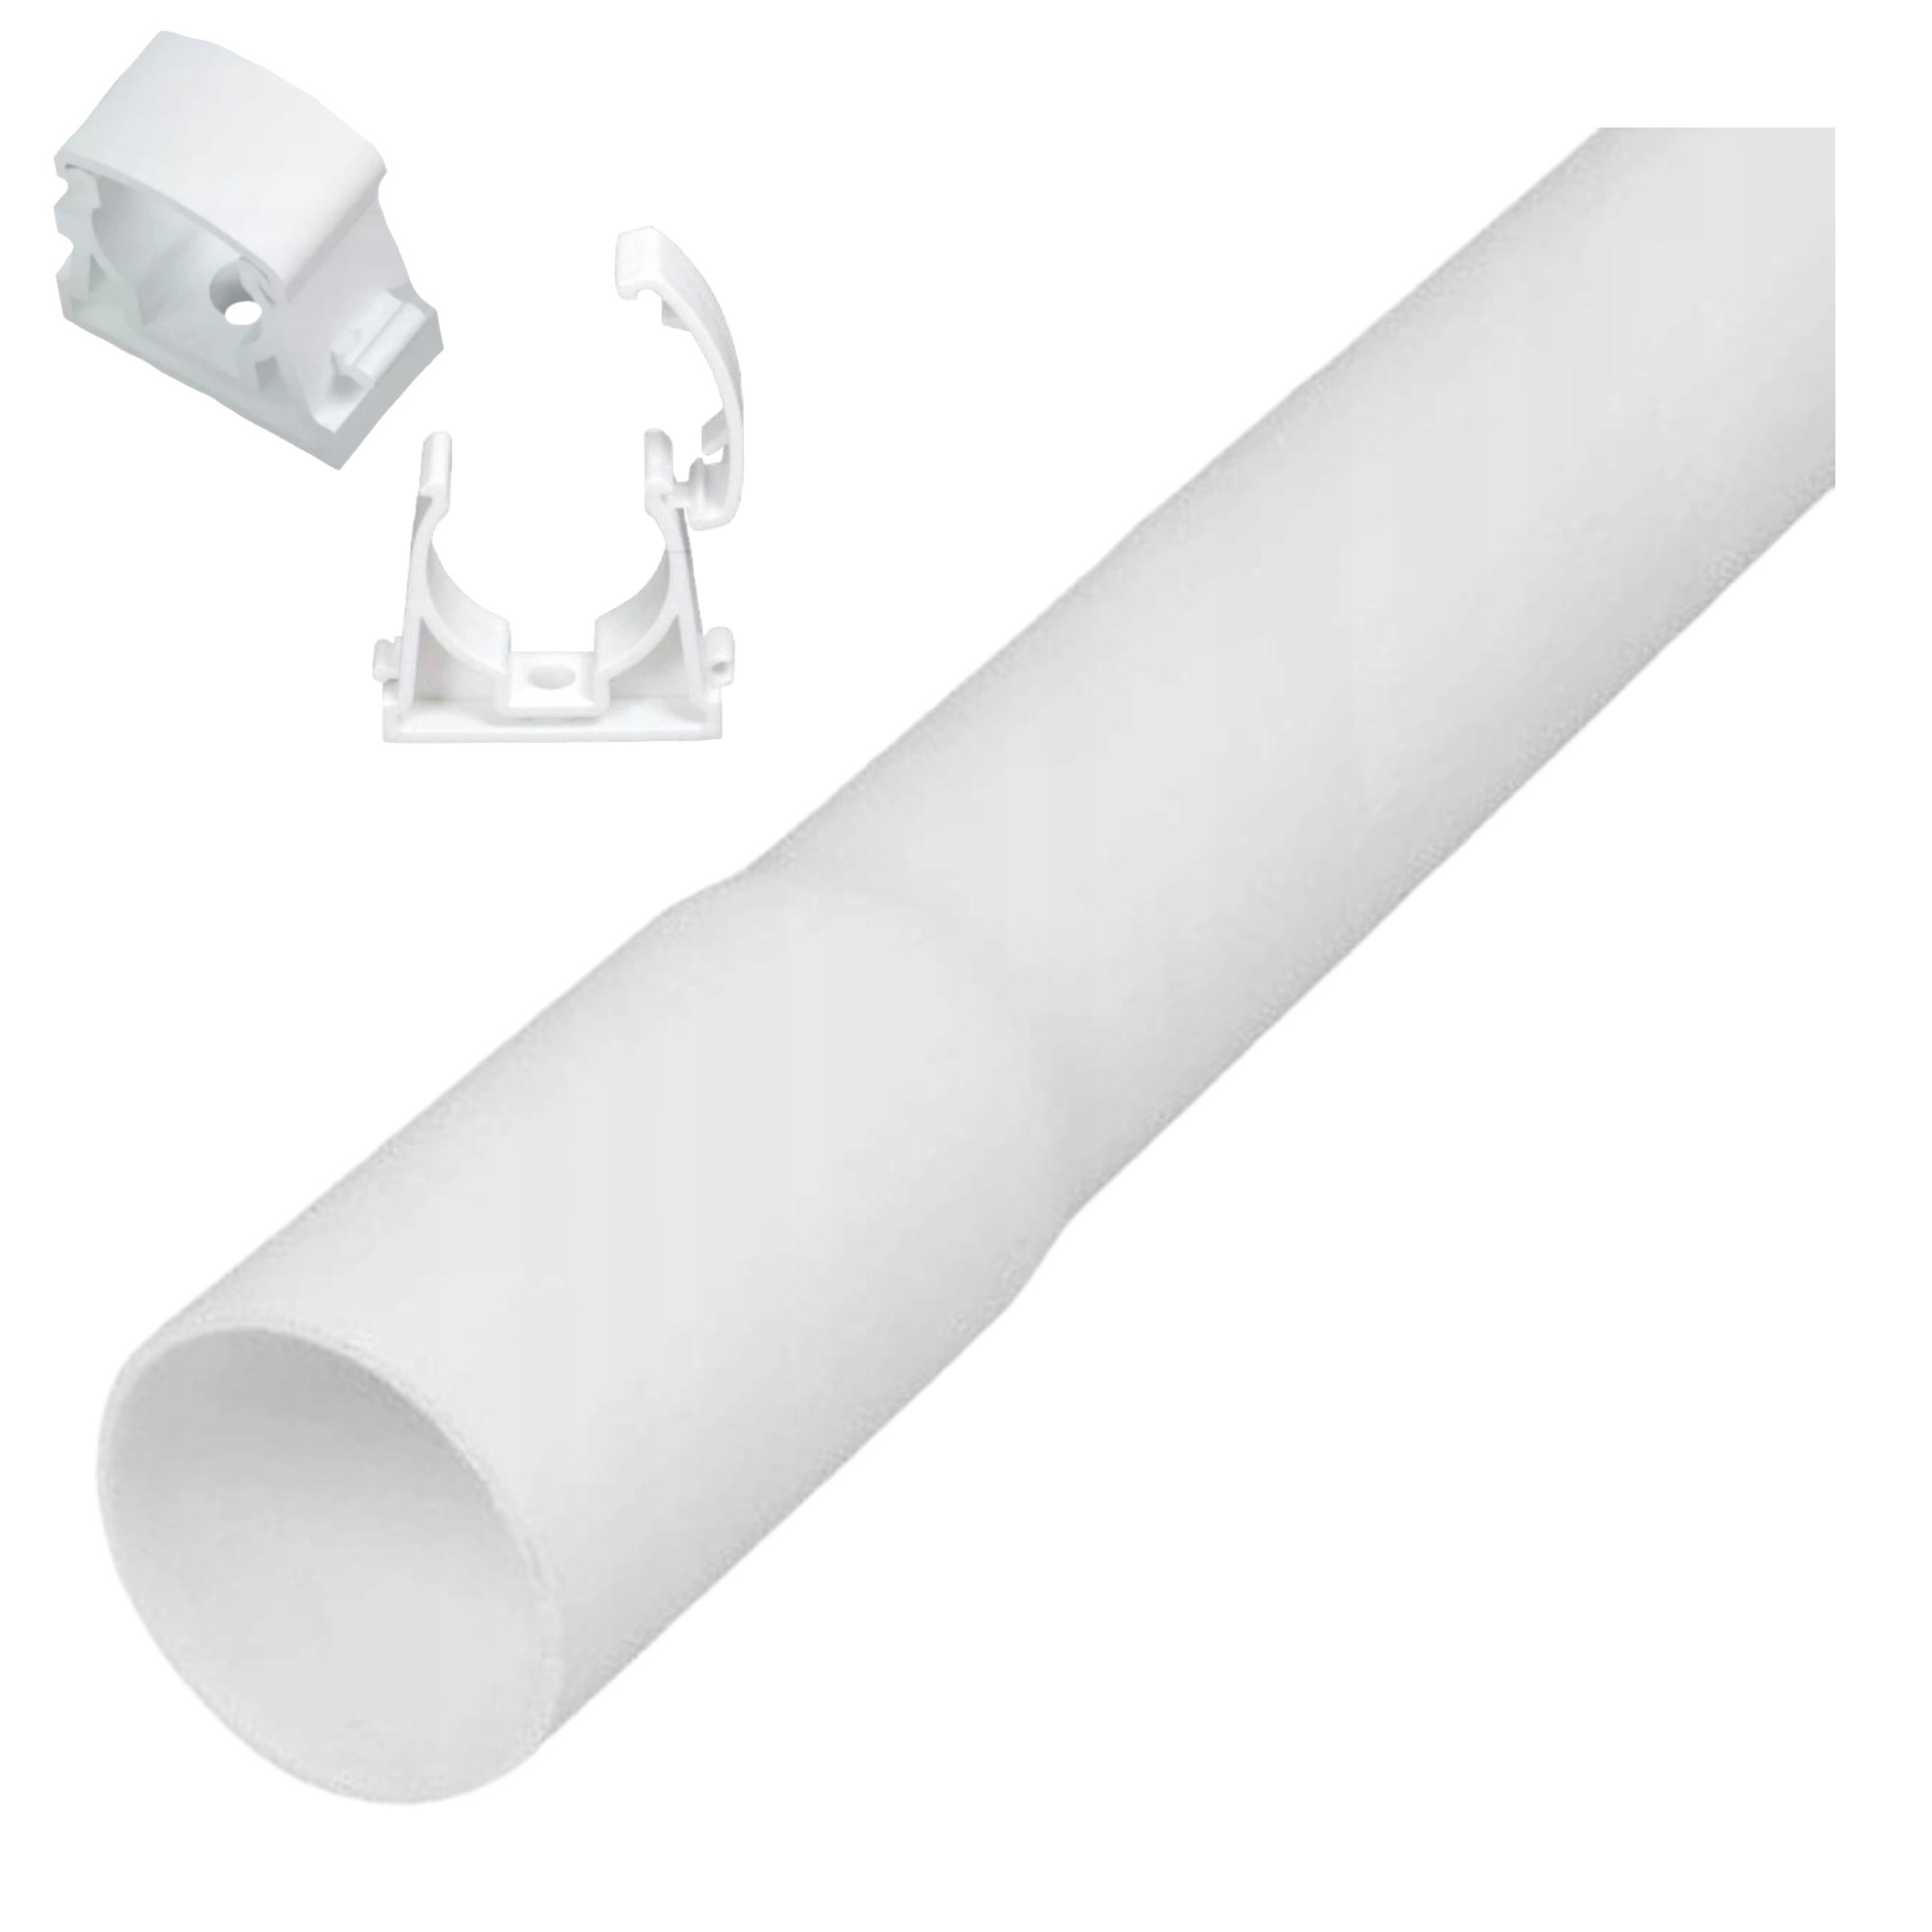 Elektrorohr  gerillte Elektroinstallationsrohr 2m Durchmesser 18mm Weiß + 2x Halterung